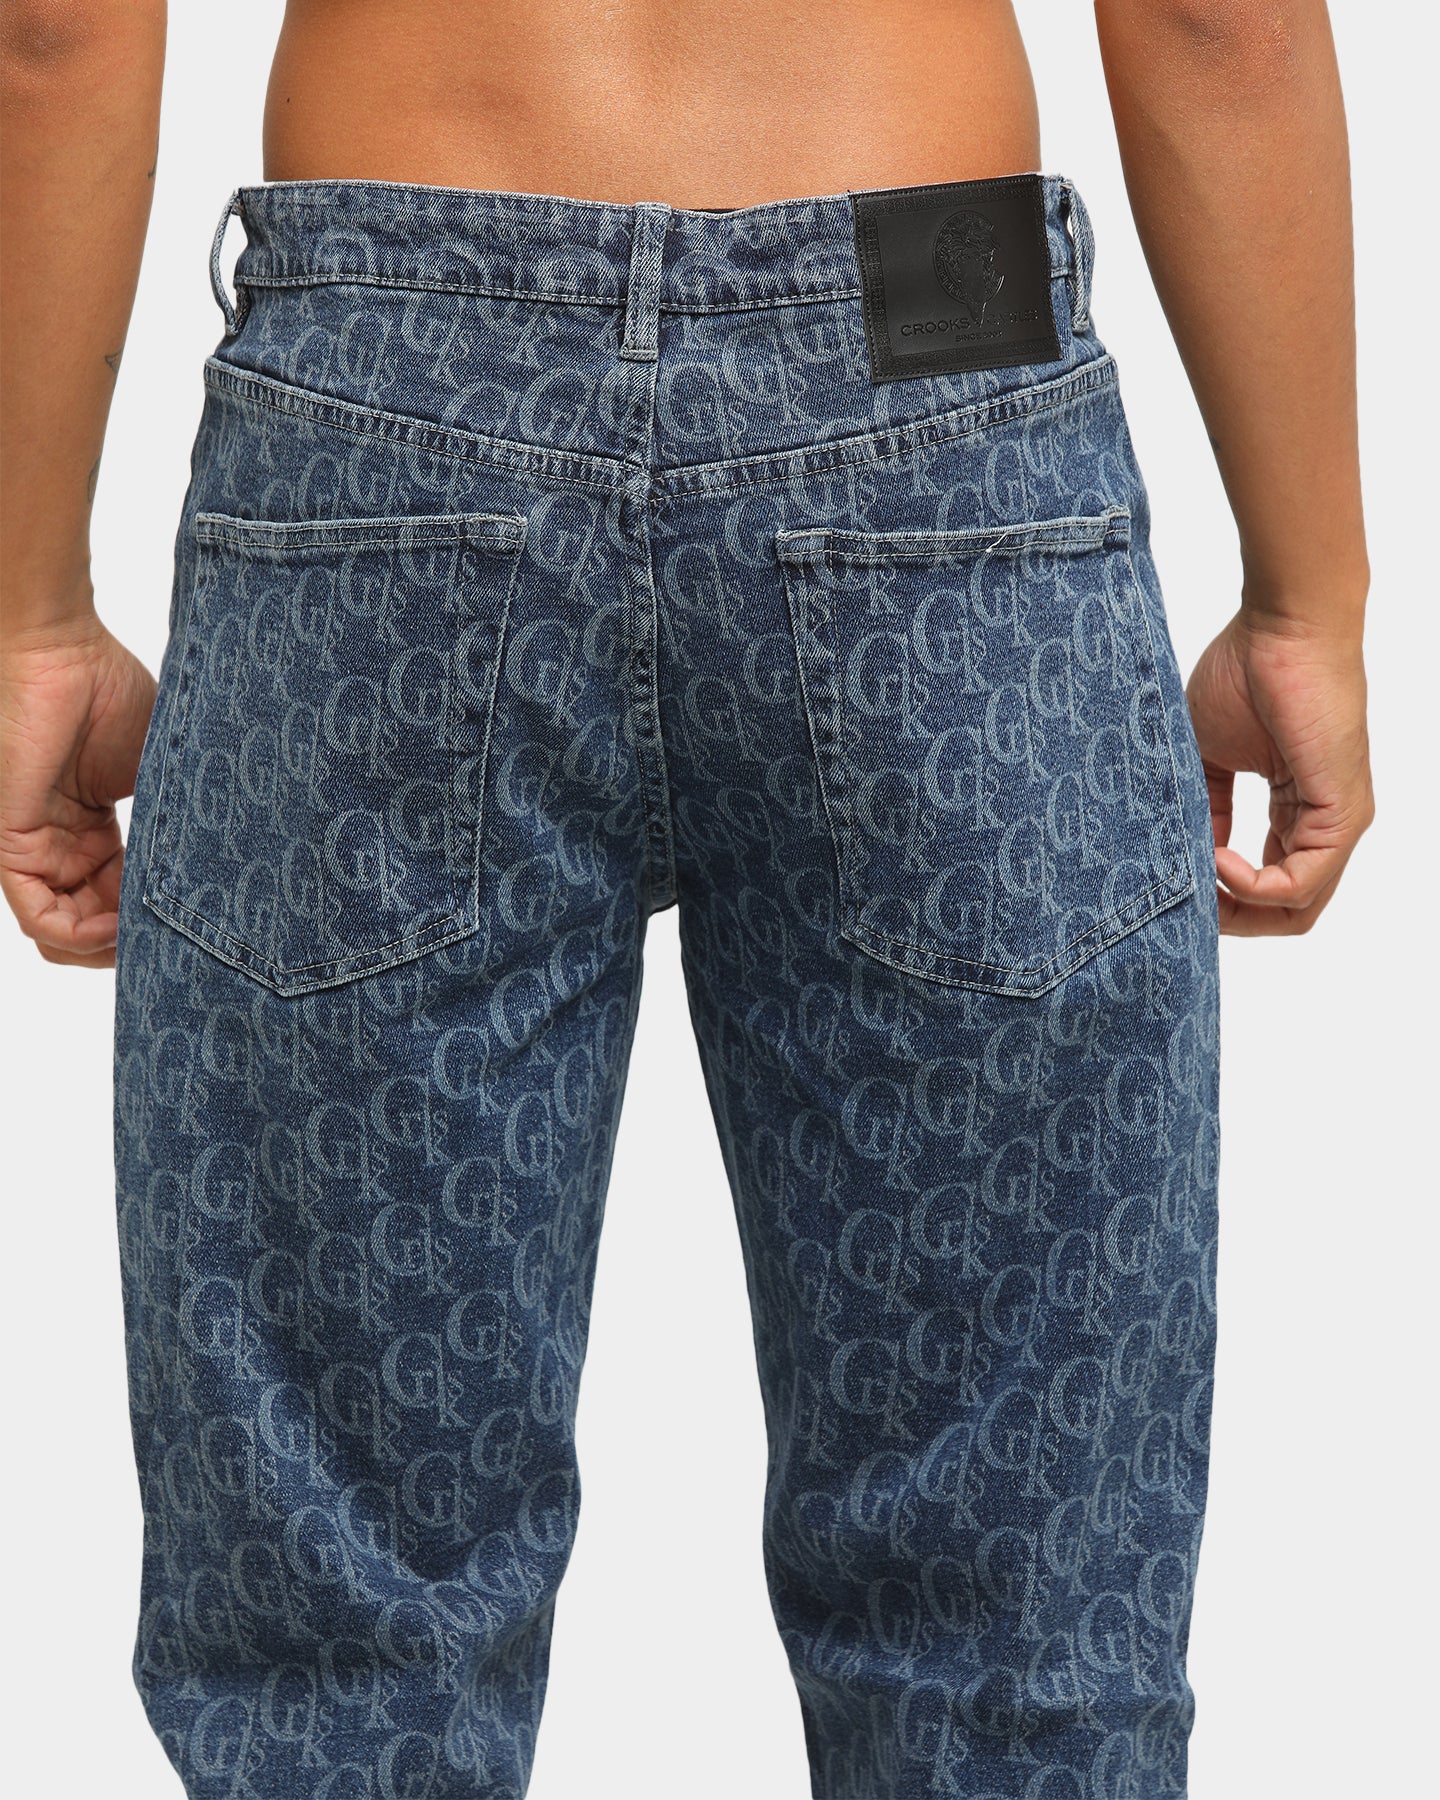 dl jeans nordstrom rack